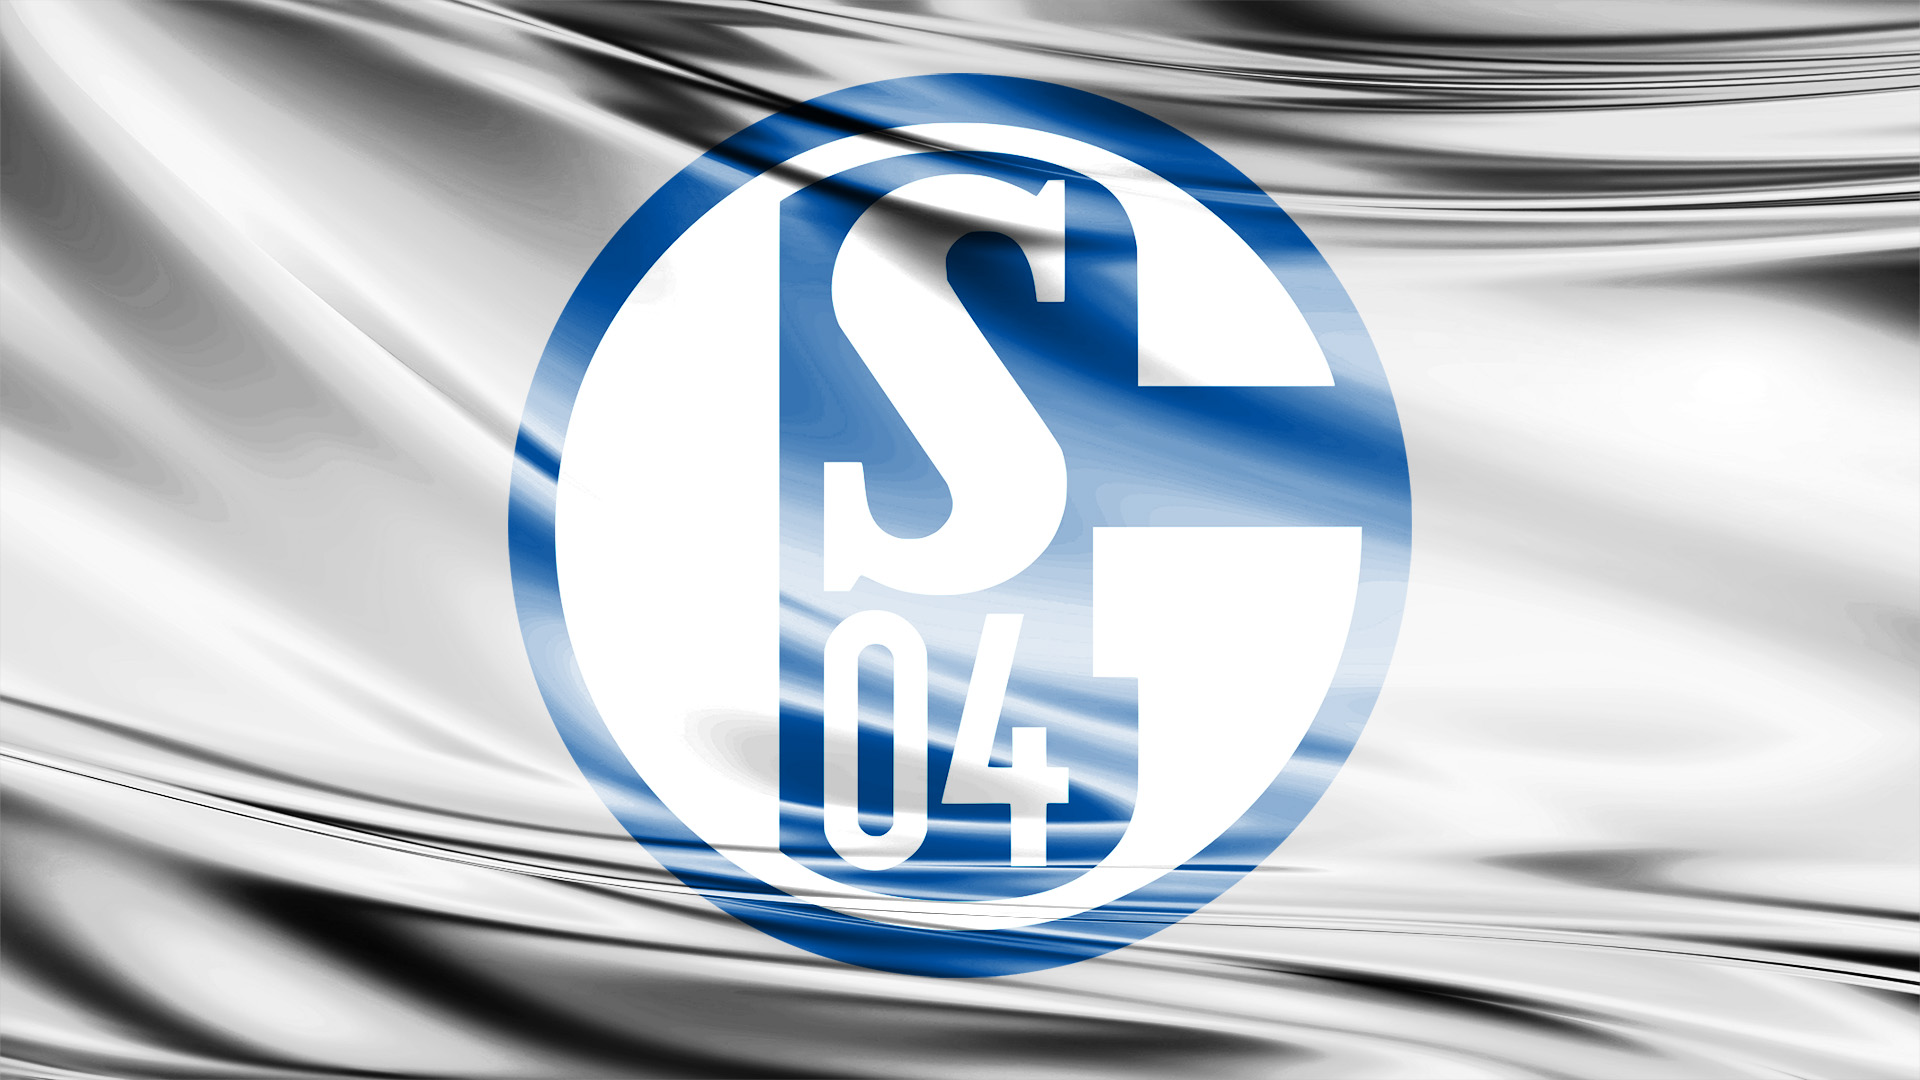 Wallpapers Of Fc Schalke 04 Football Club Hintergrundbilder - Schalke 04 , HD Wallpaper & Backgrounds